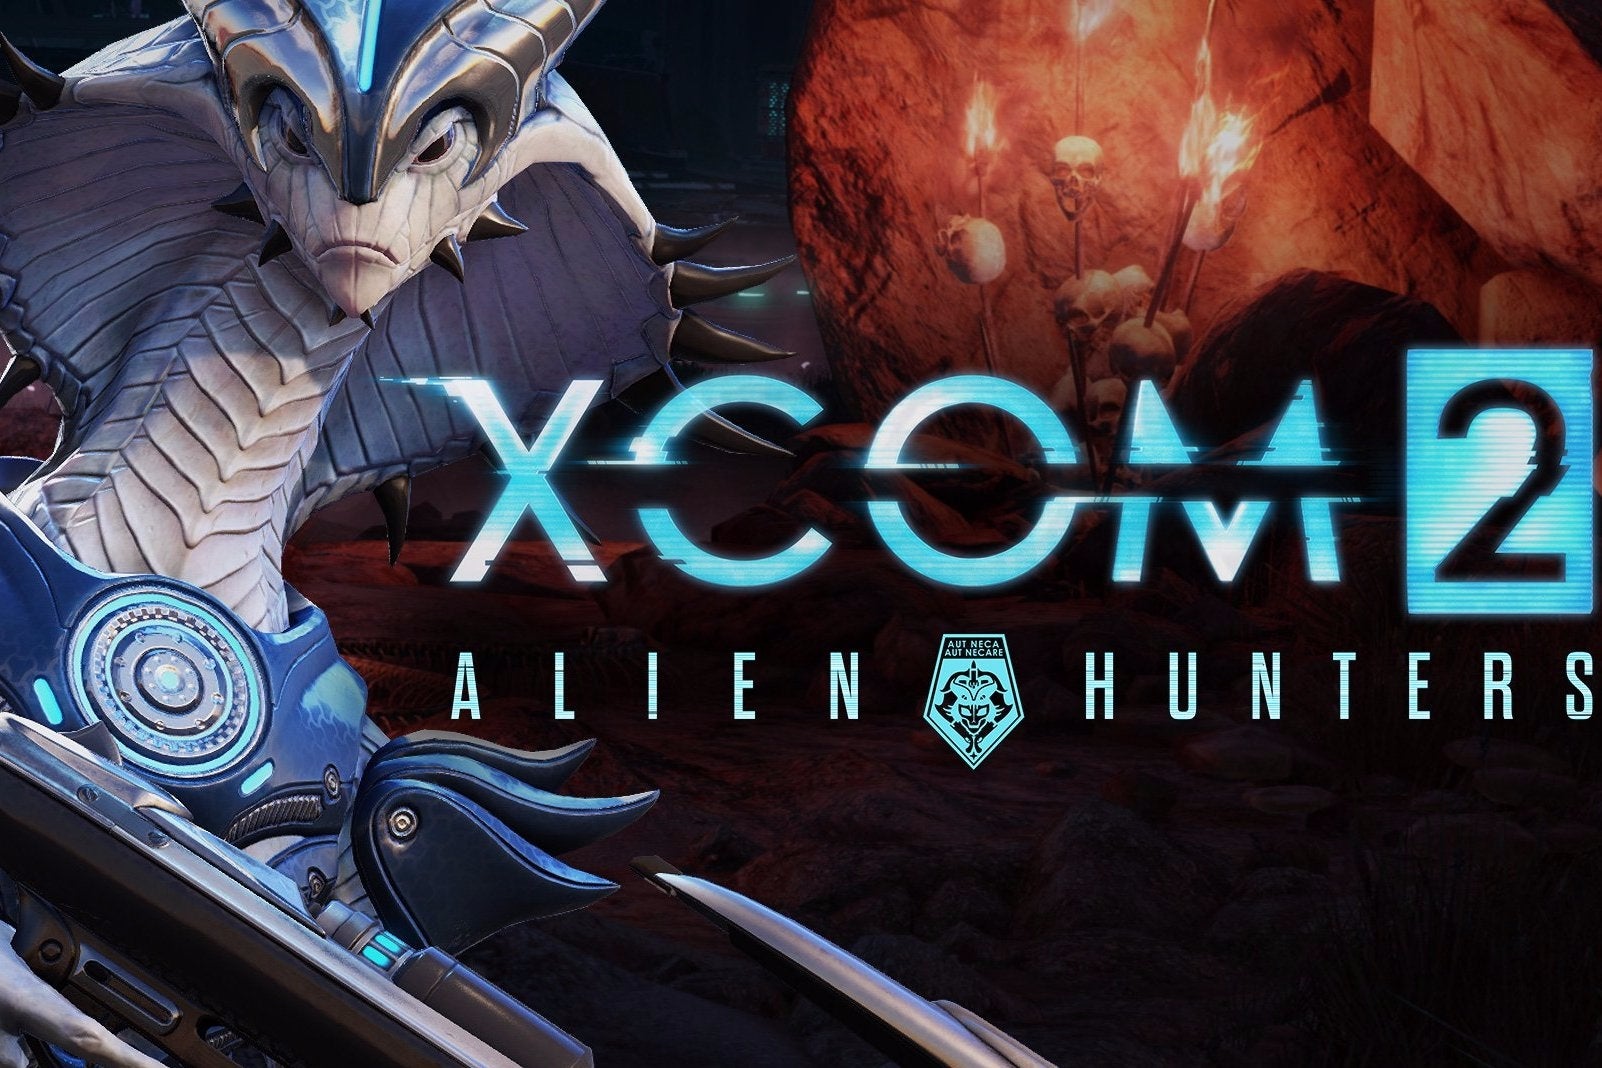 Imagen para Ya disponible el DLC Cazadores de alienígenas de XCOM 2